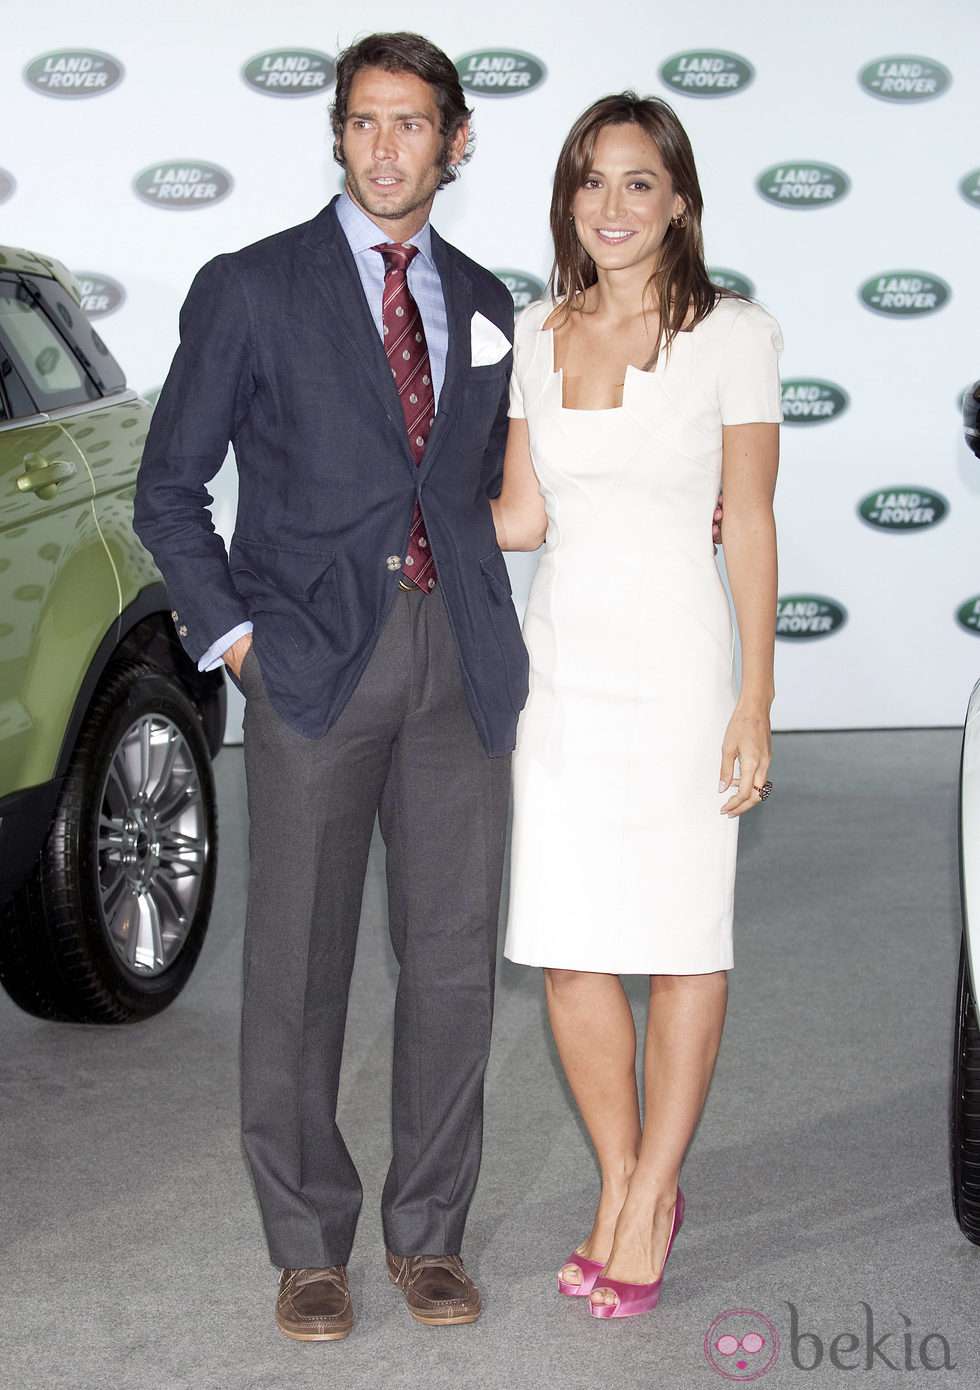 Tamara Falcó y Sebastián Palomo Linares en la presentación del coche 'Range Rover Evoque'